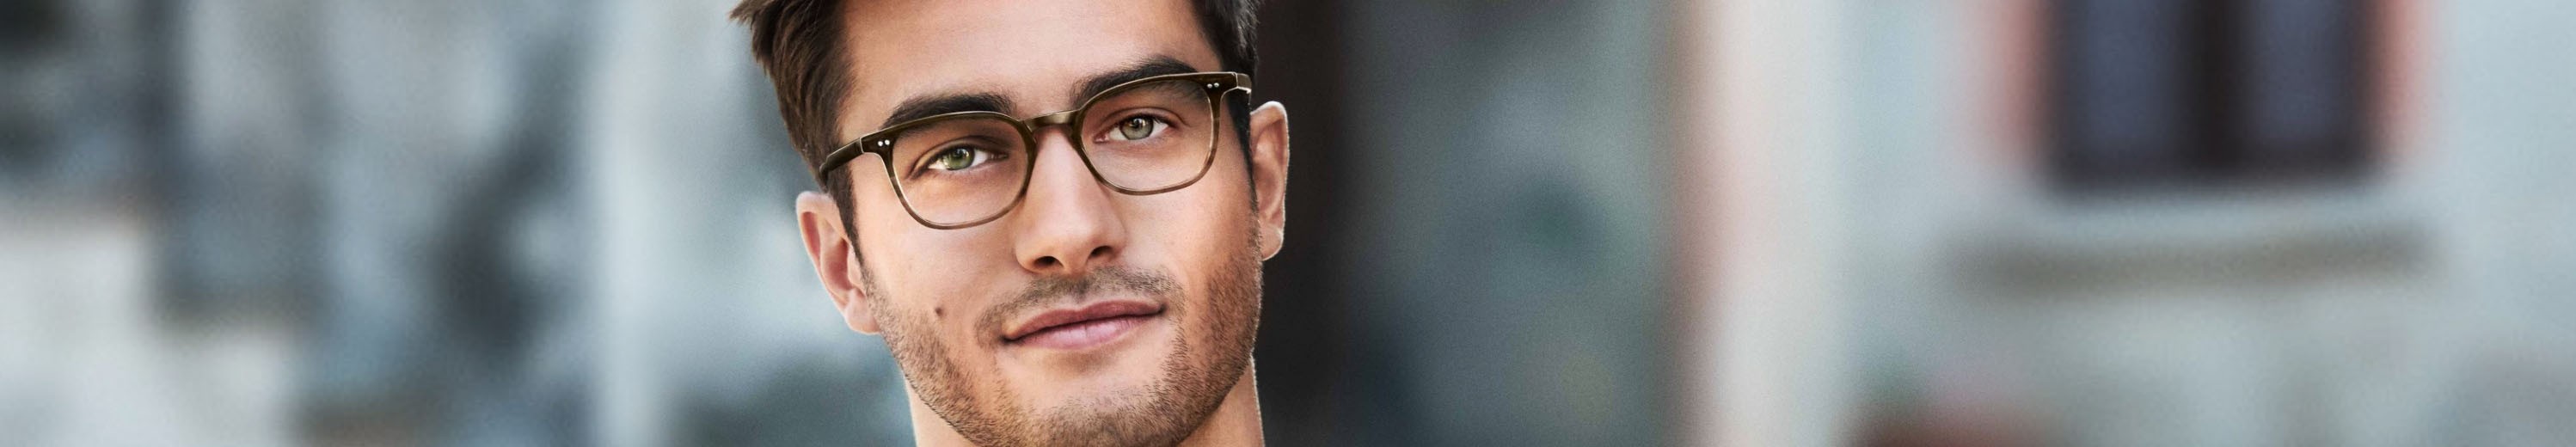 Wayfarer Eyeglasses for Men